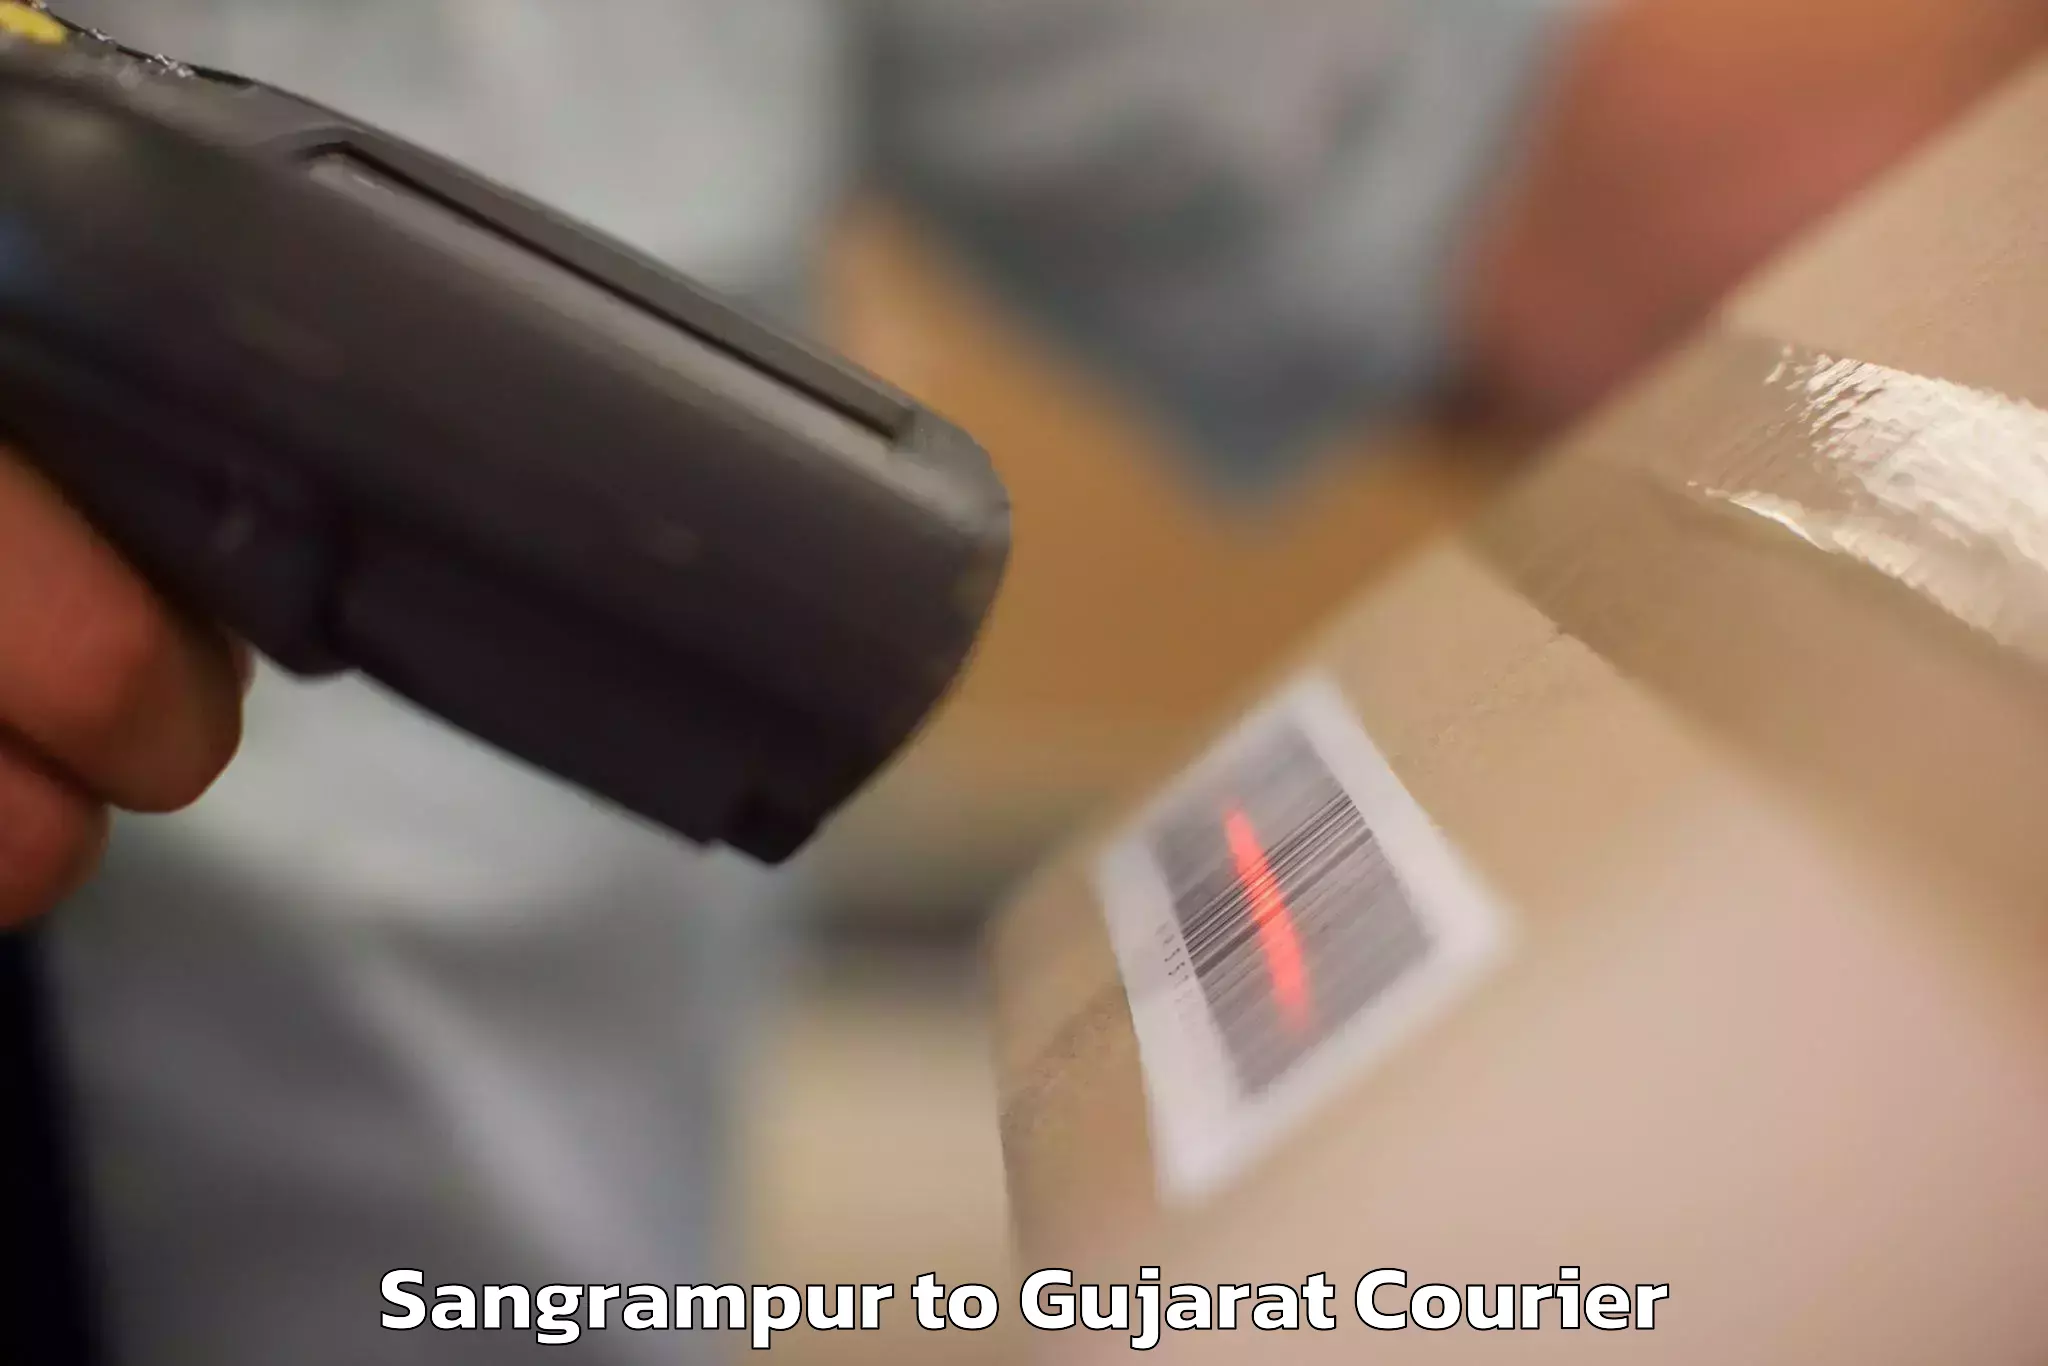 Baggage shipping service Sangrampur to Vijapur